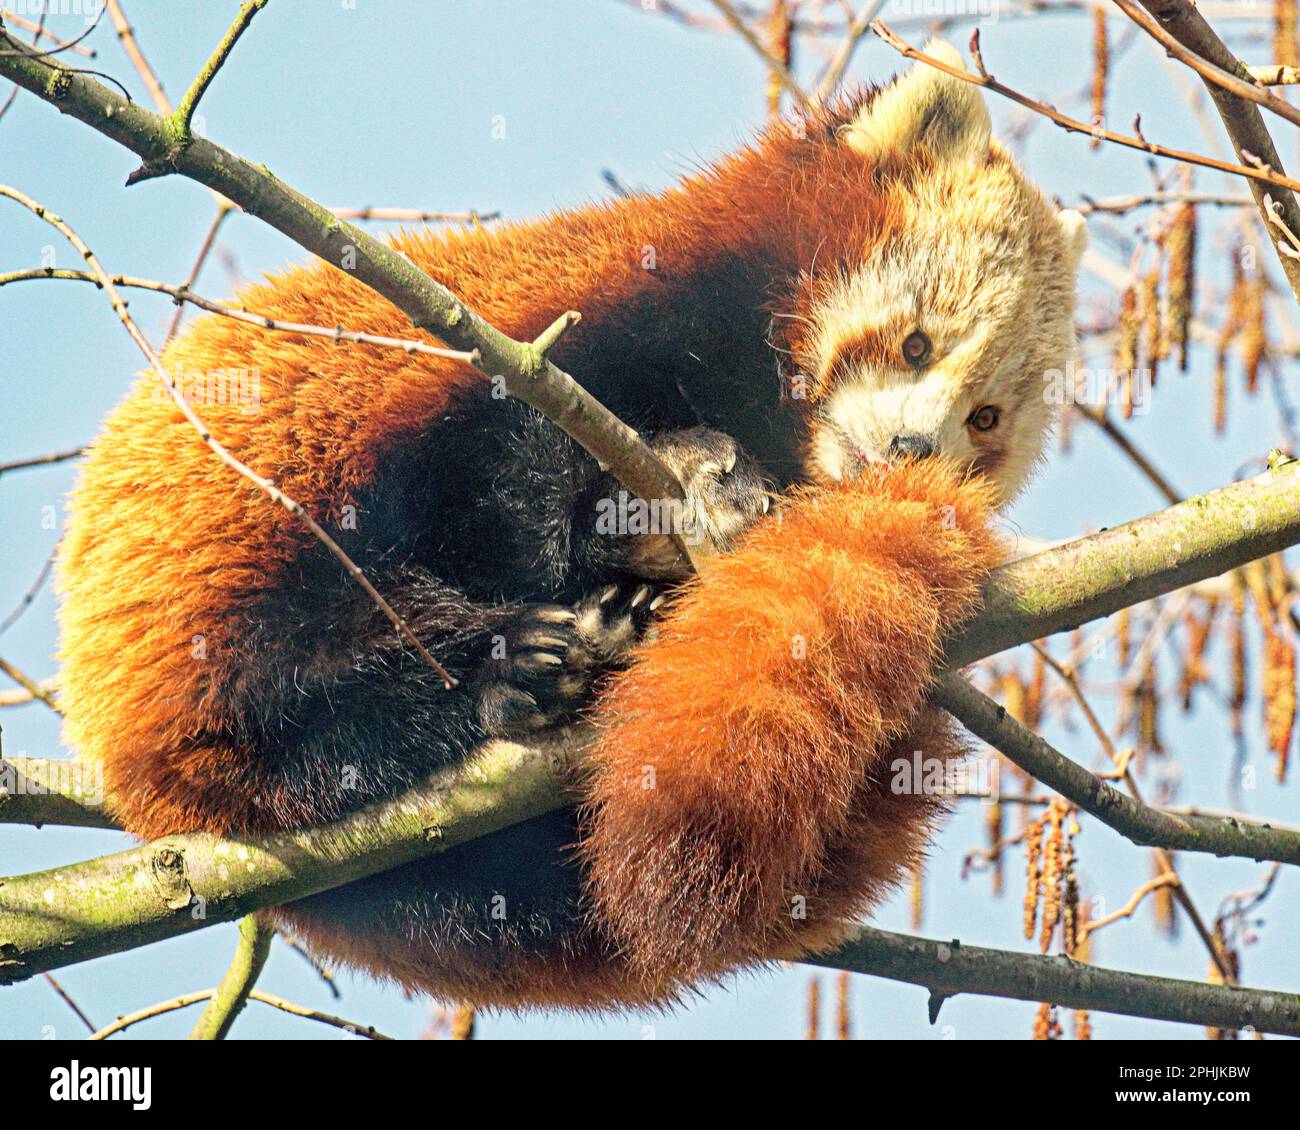 Panda rouge (Ailurus fulgens), également connu sous le nom de panda inférieur, avec bambou Banque D'Images